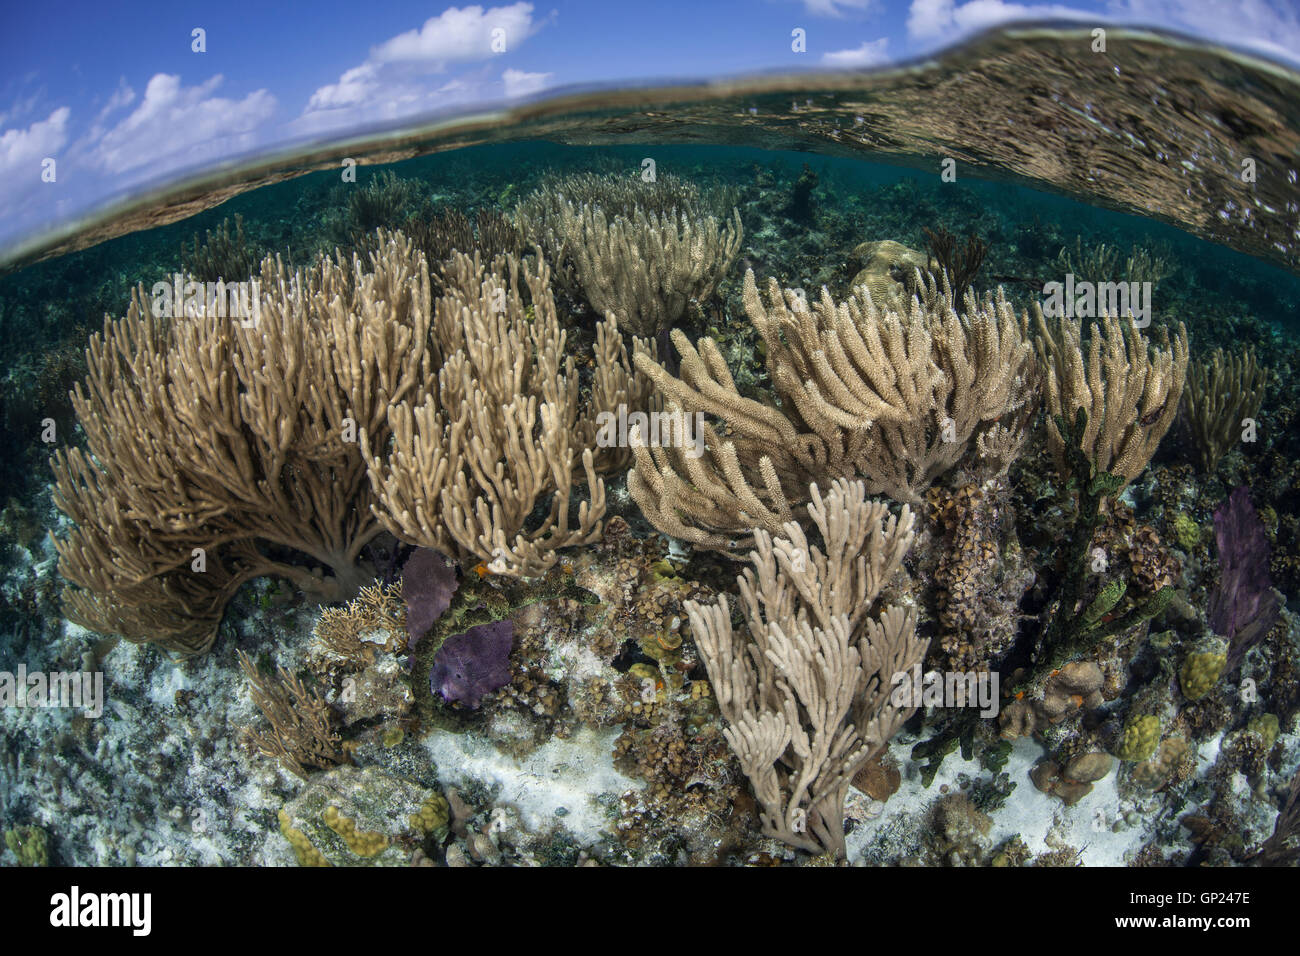 Les récifs coralliens de la mer des Caraïbes avec tige, Pseudoplexaura porosa, Turneffe Atoll, des Caraïbes, le Belize Banque D'Images